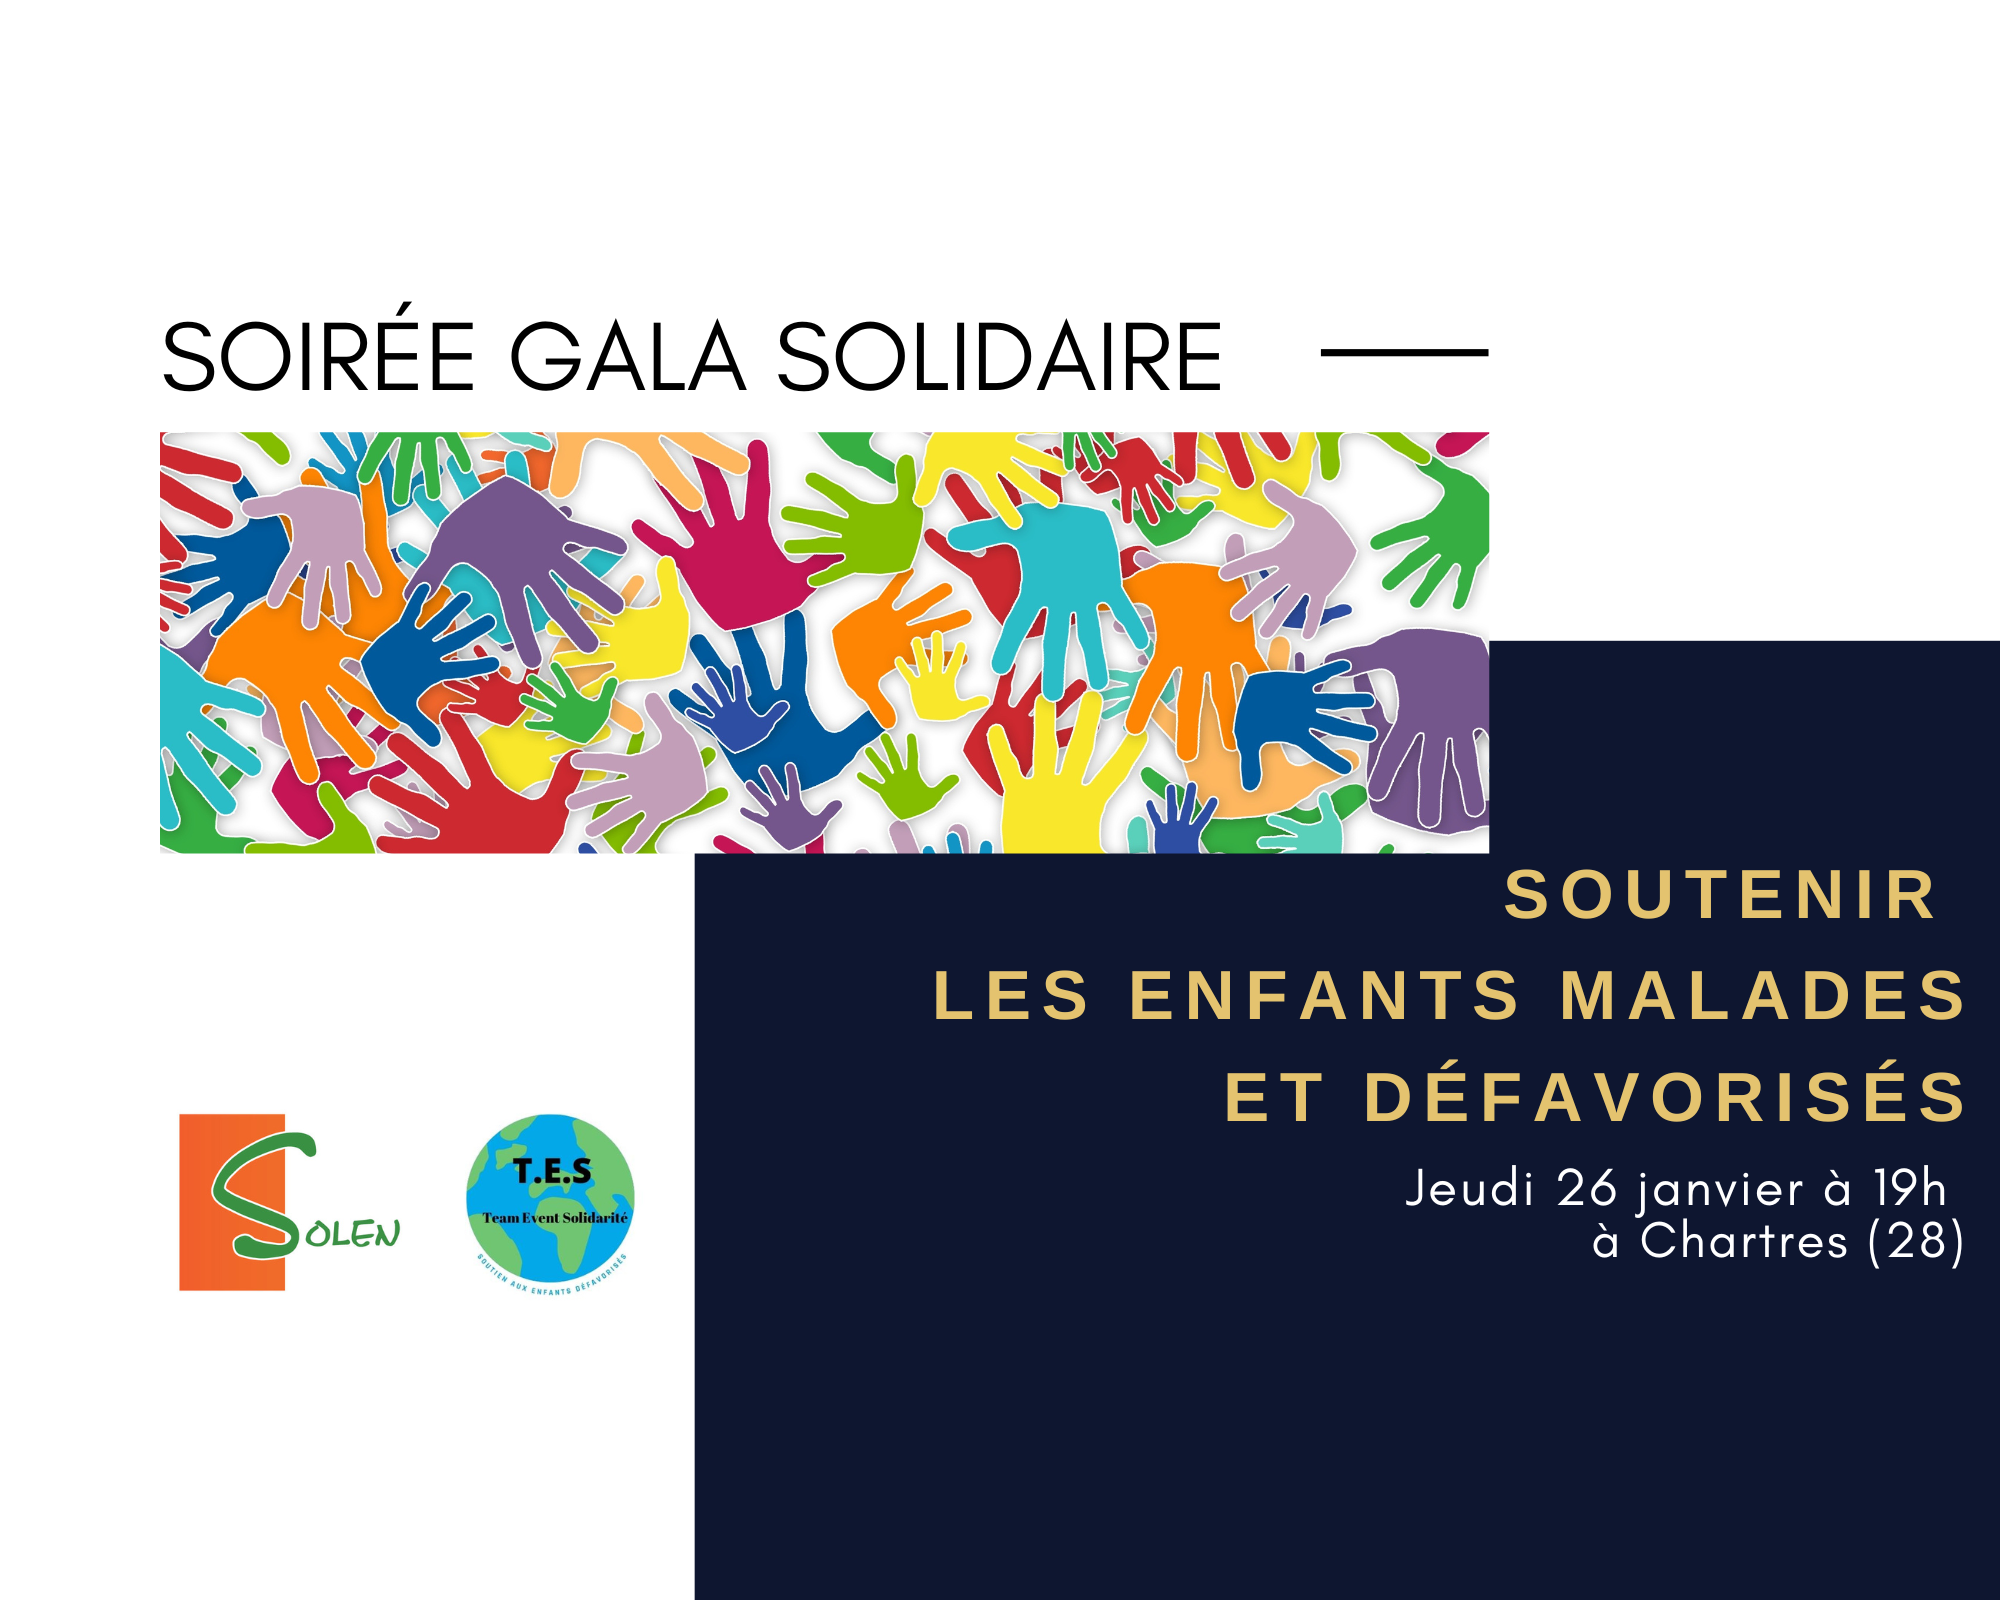 Soirée Gala Solidaire au profit des enfants défavorisés